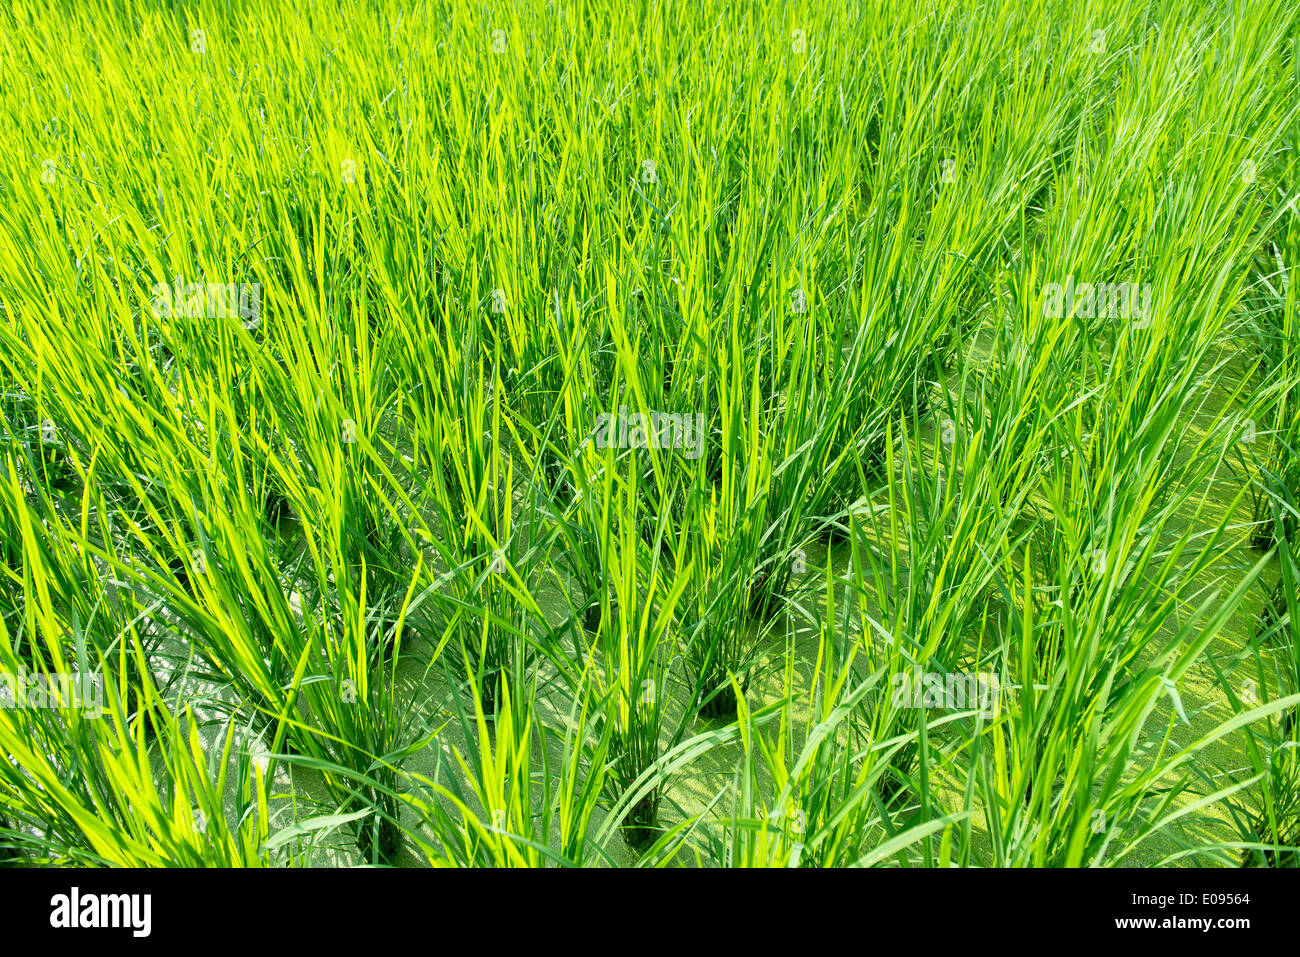 Arrière-plan de champ de riz vert avec de jeunes plants de riz Banque D'Images